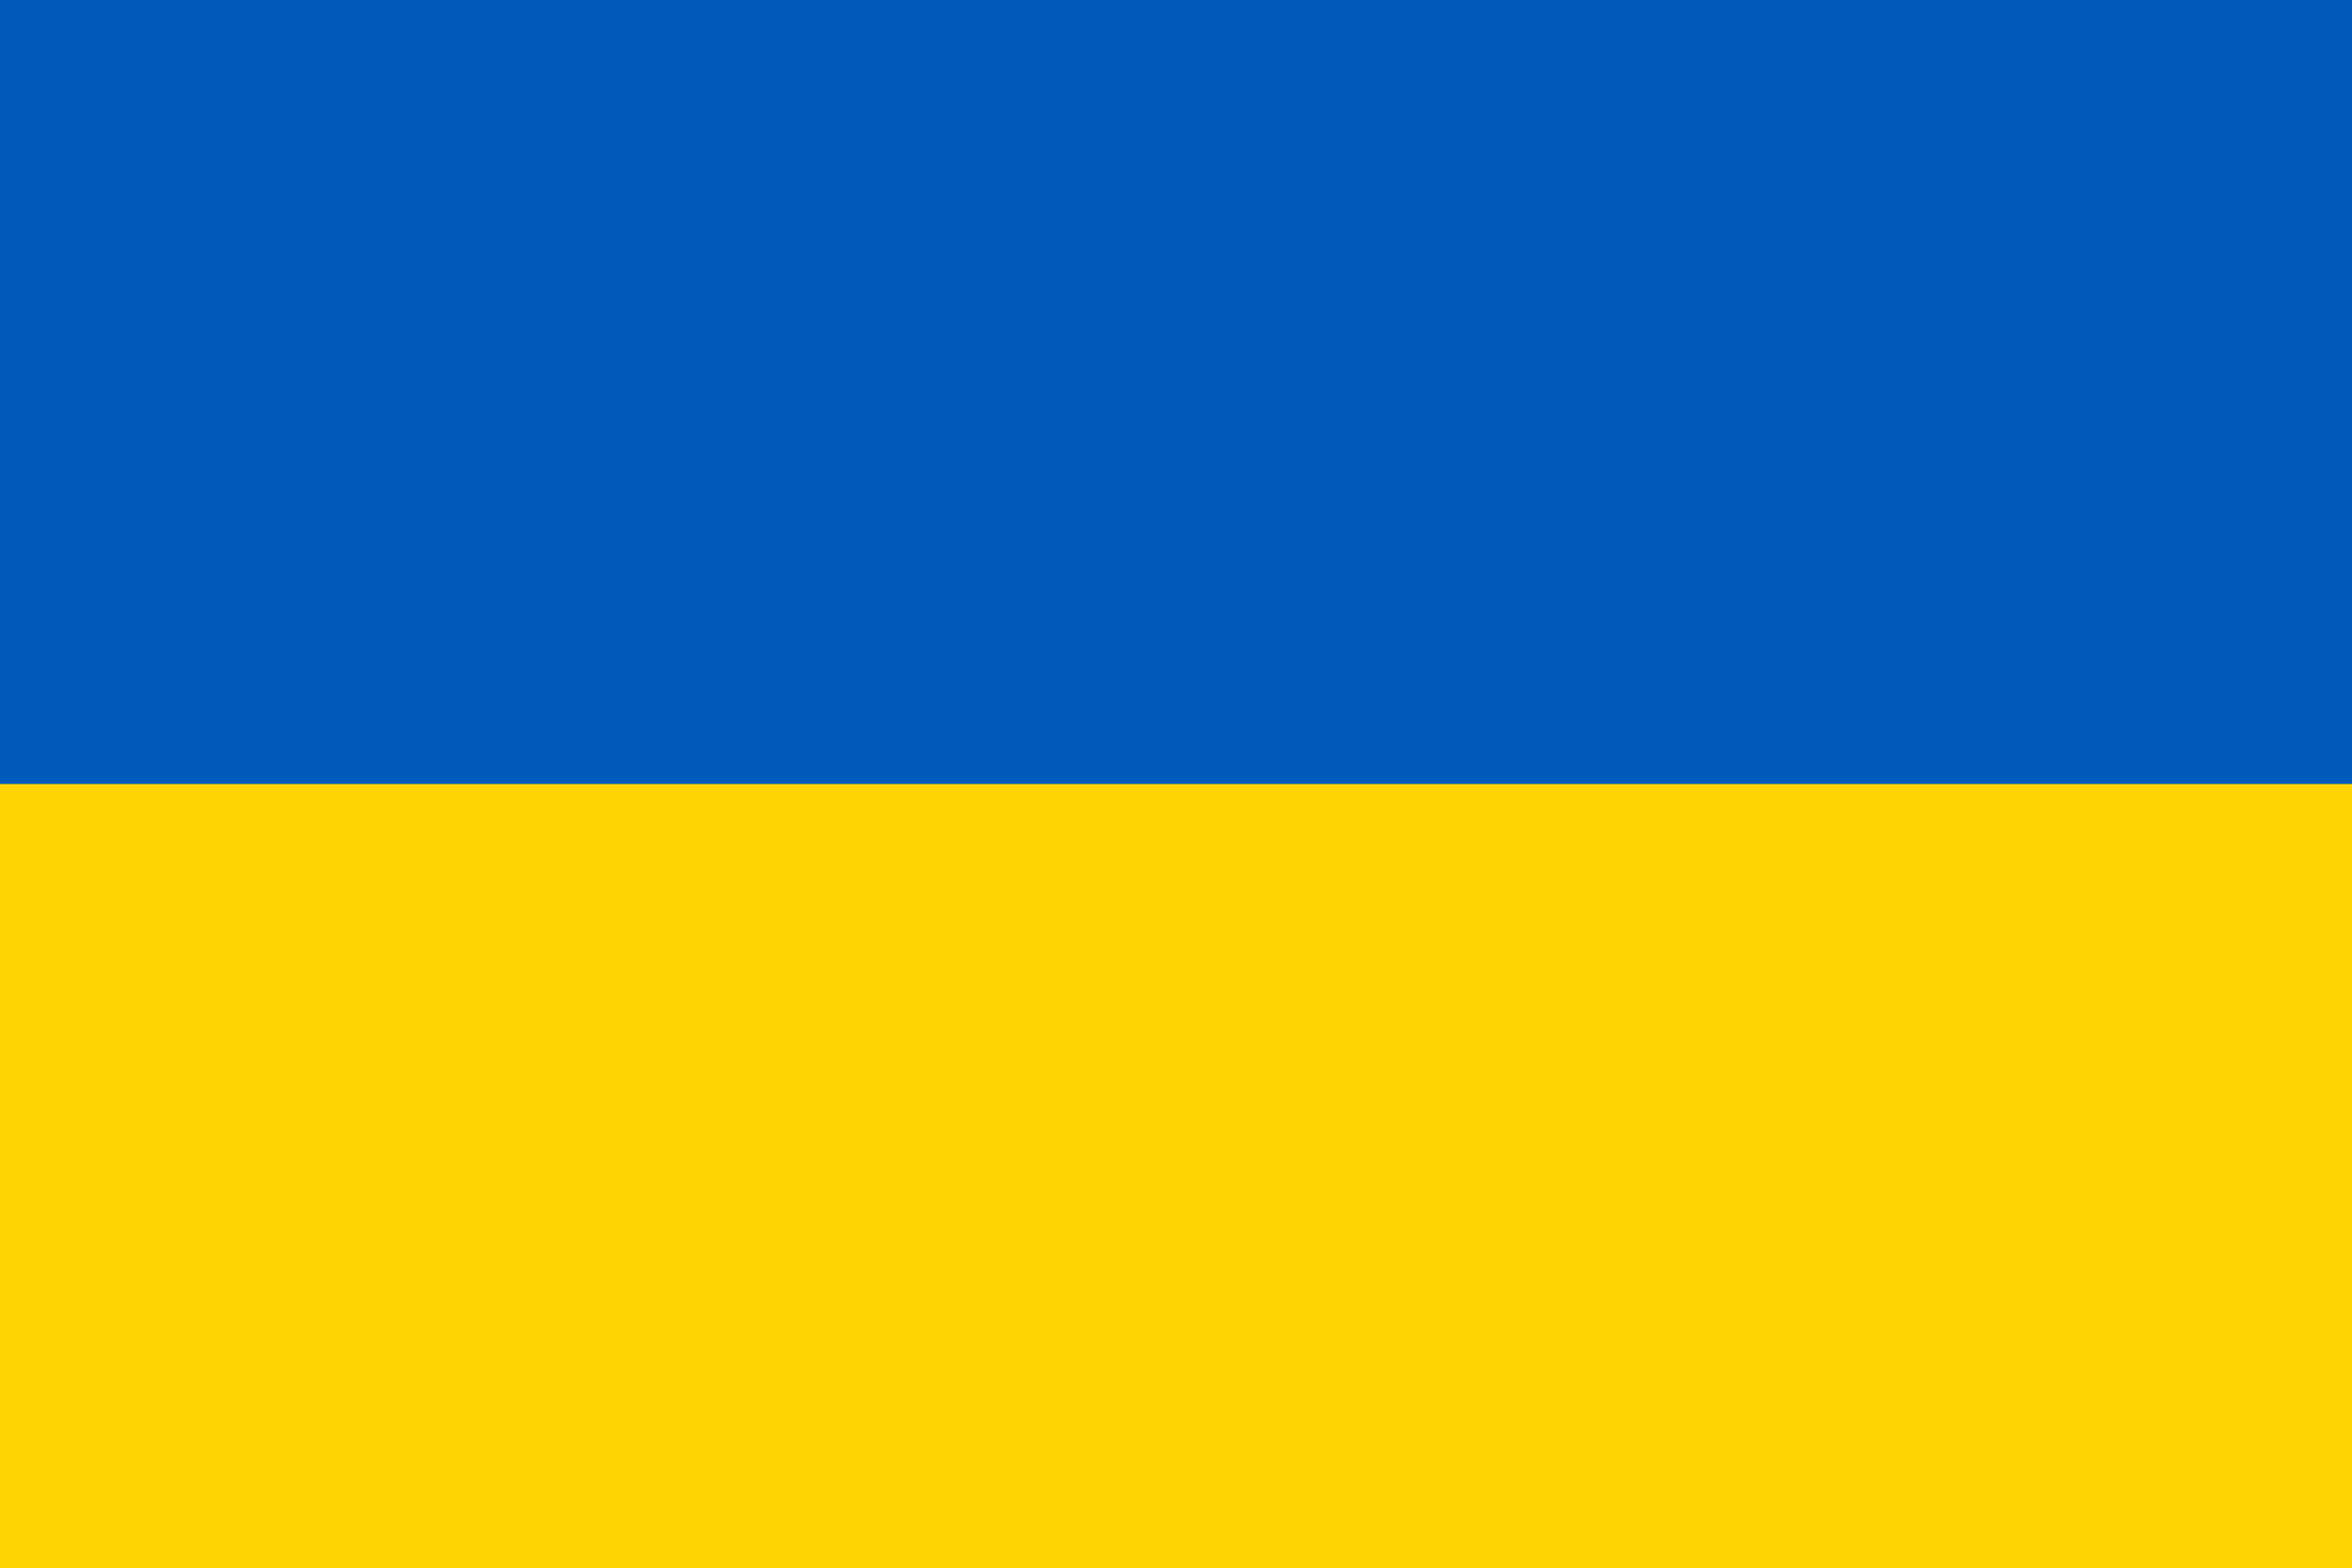 Ukrainian flag.jpg